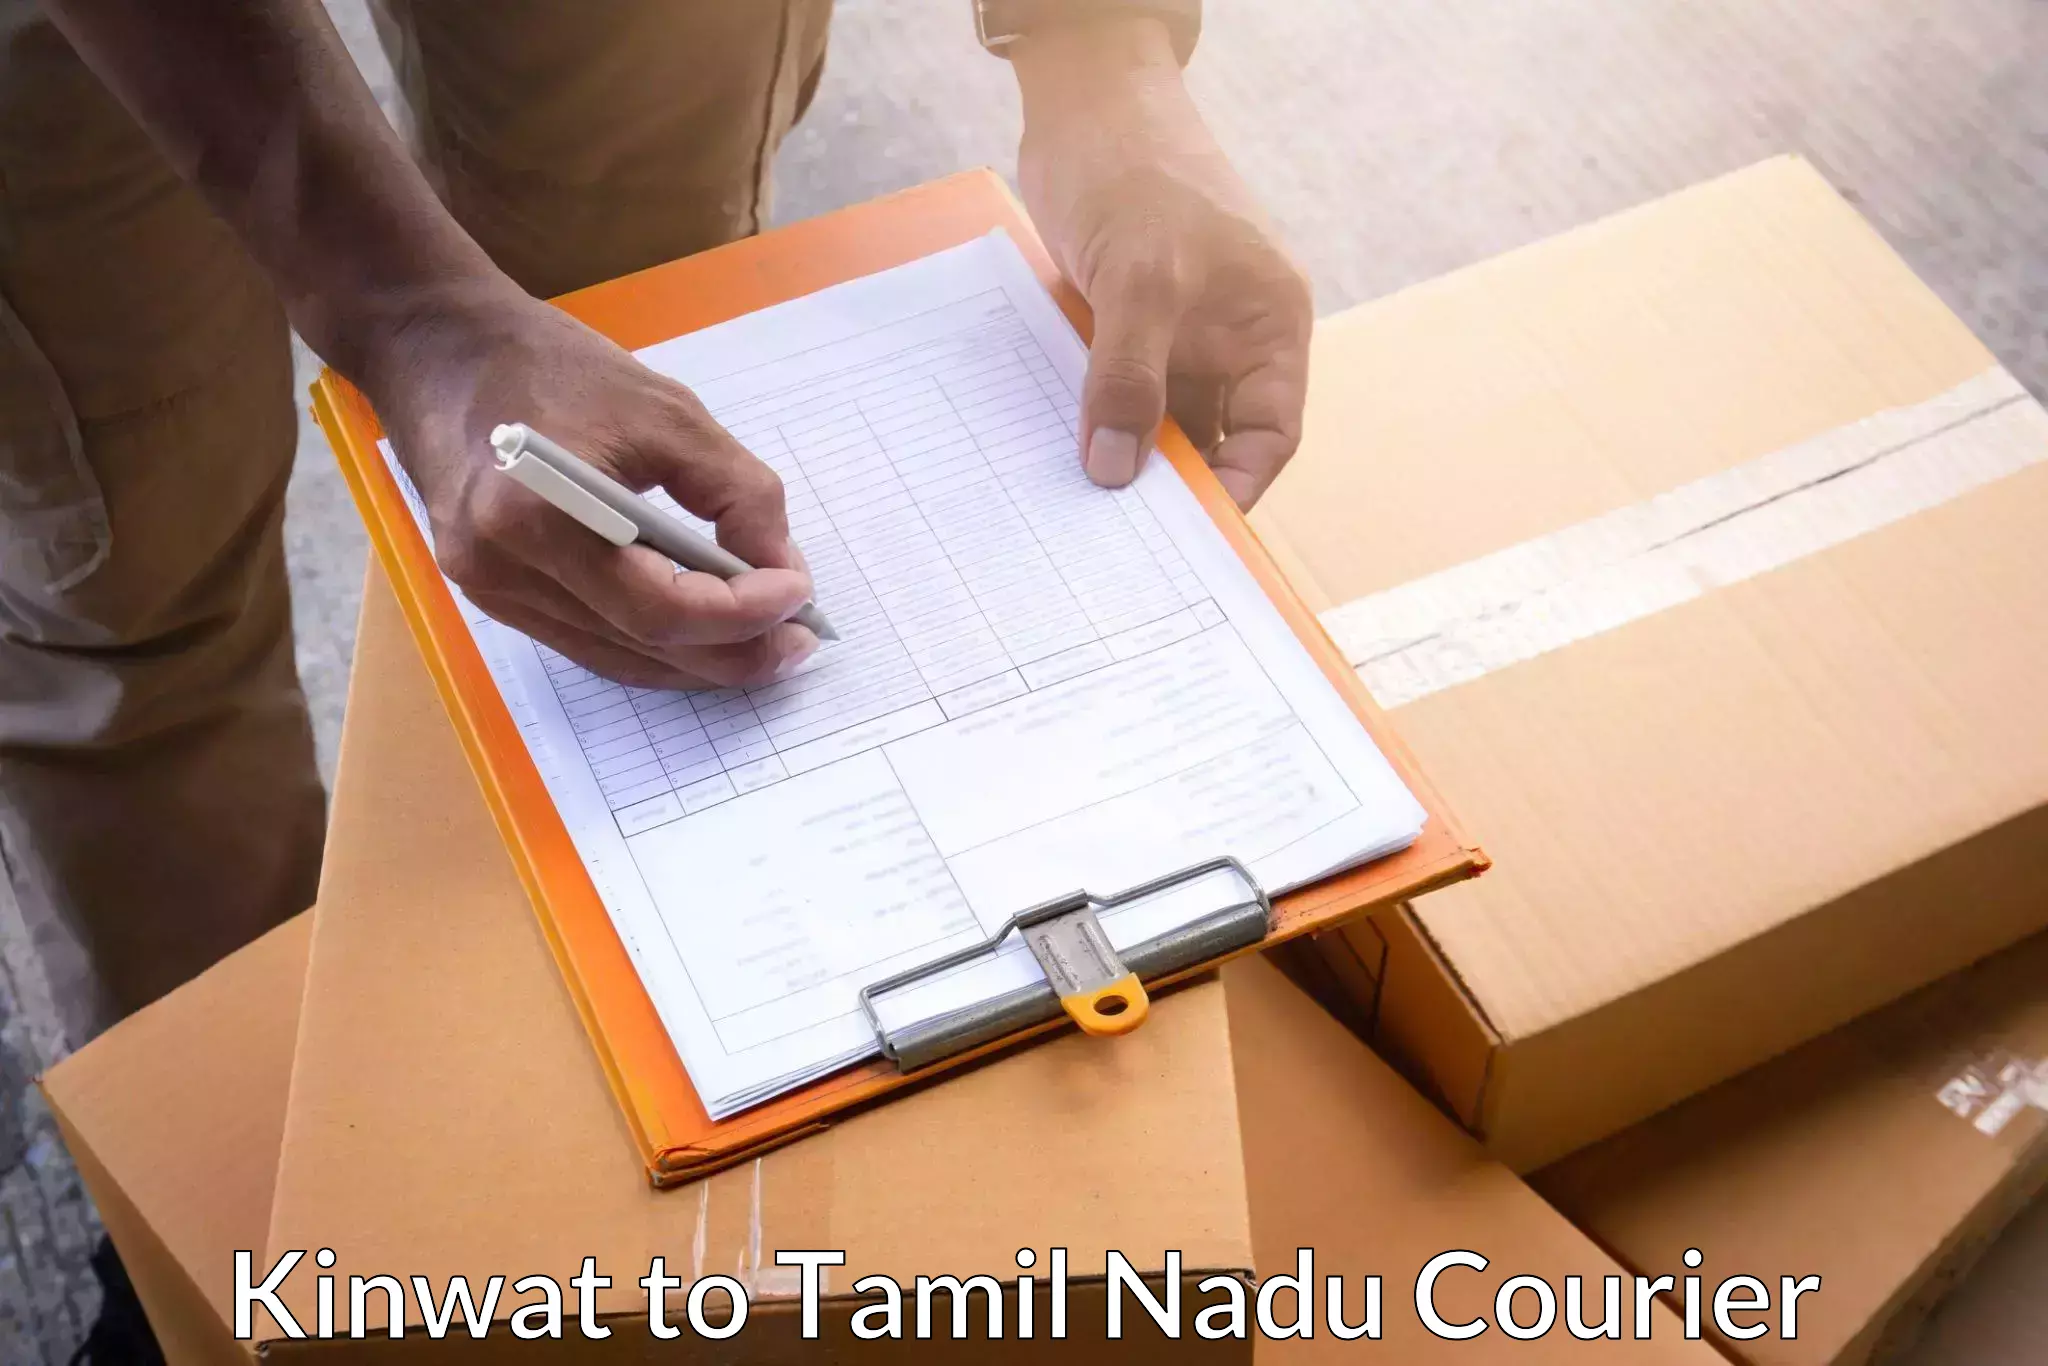 Logistics service provider Kinwat to Tamil Nadu